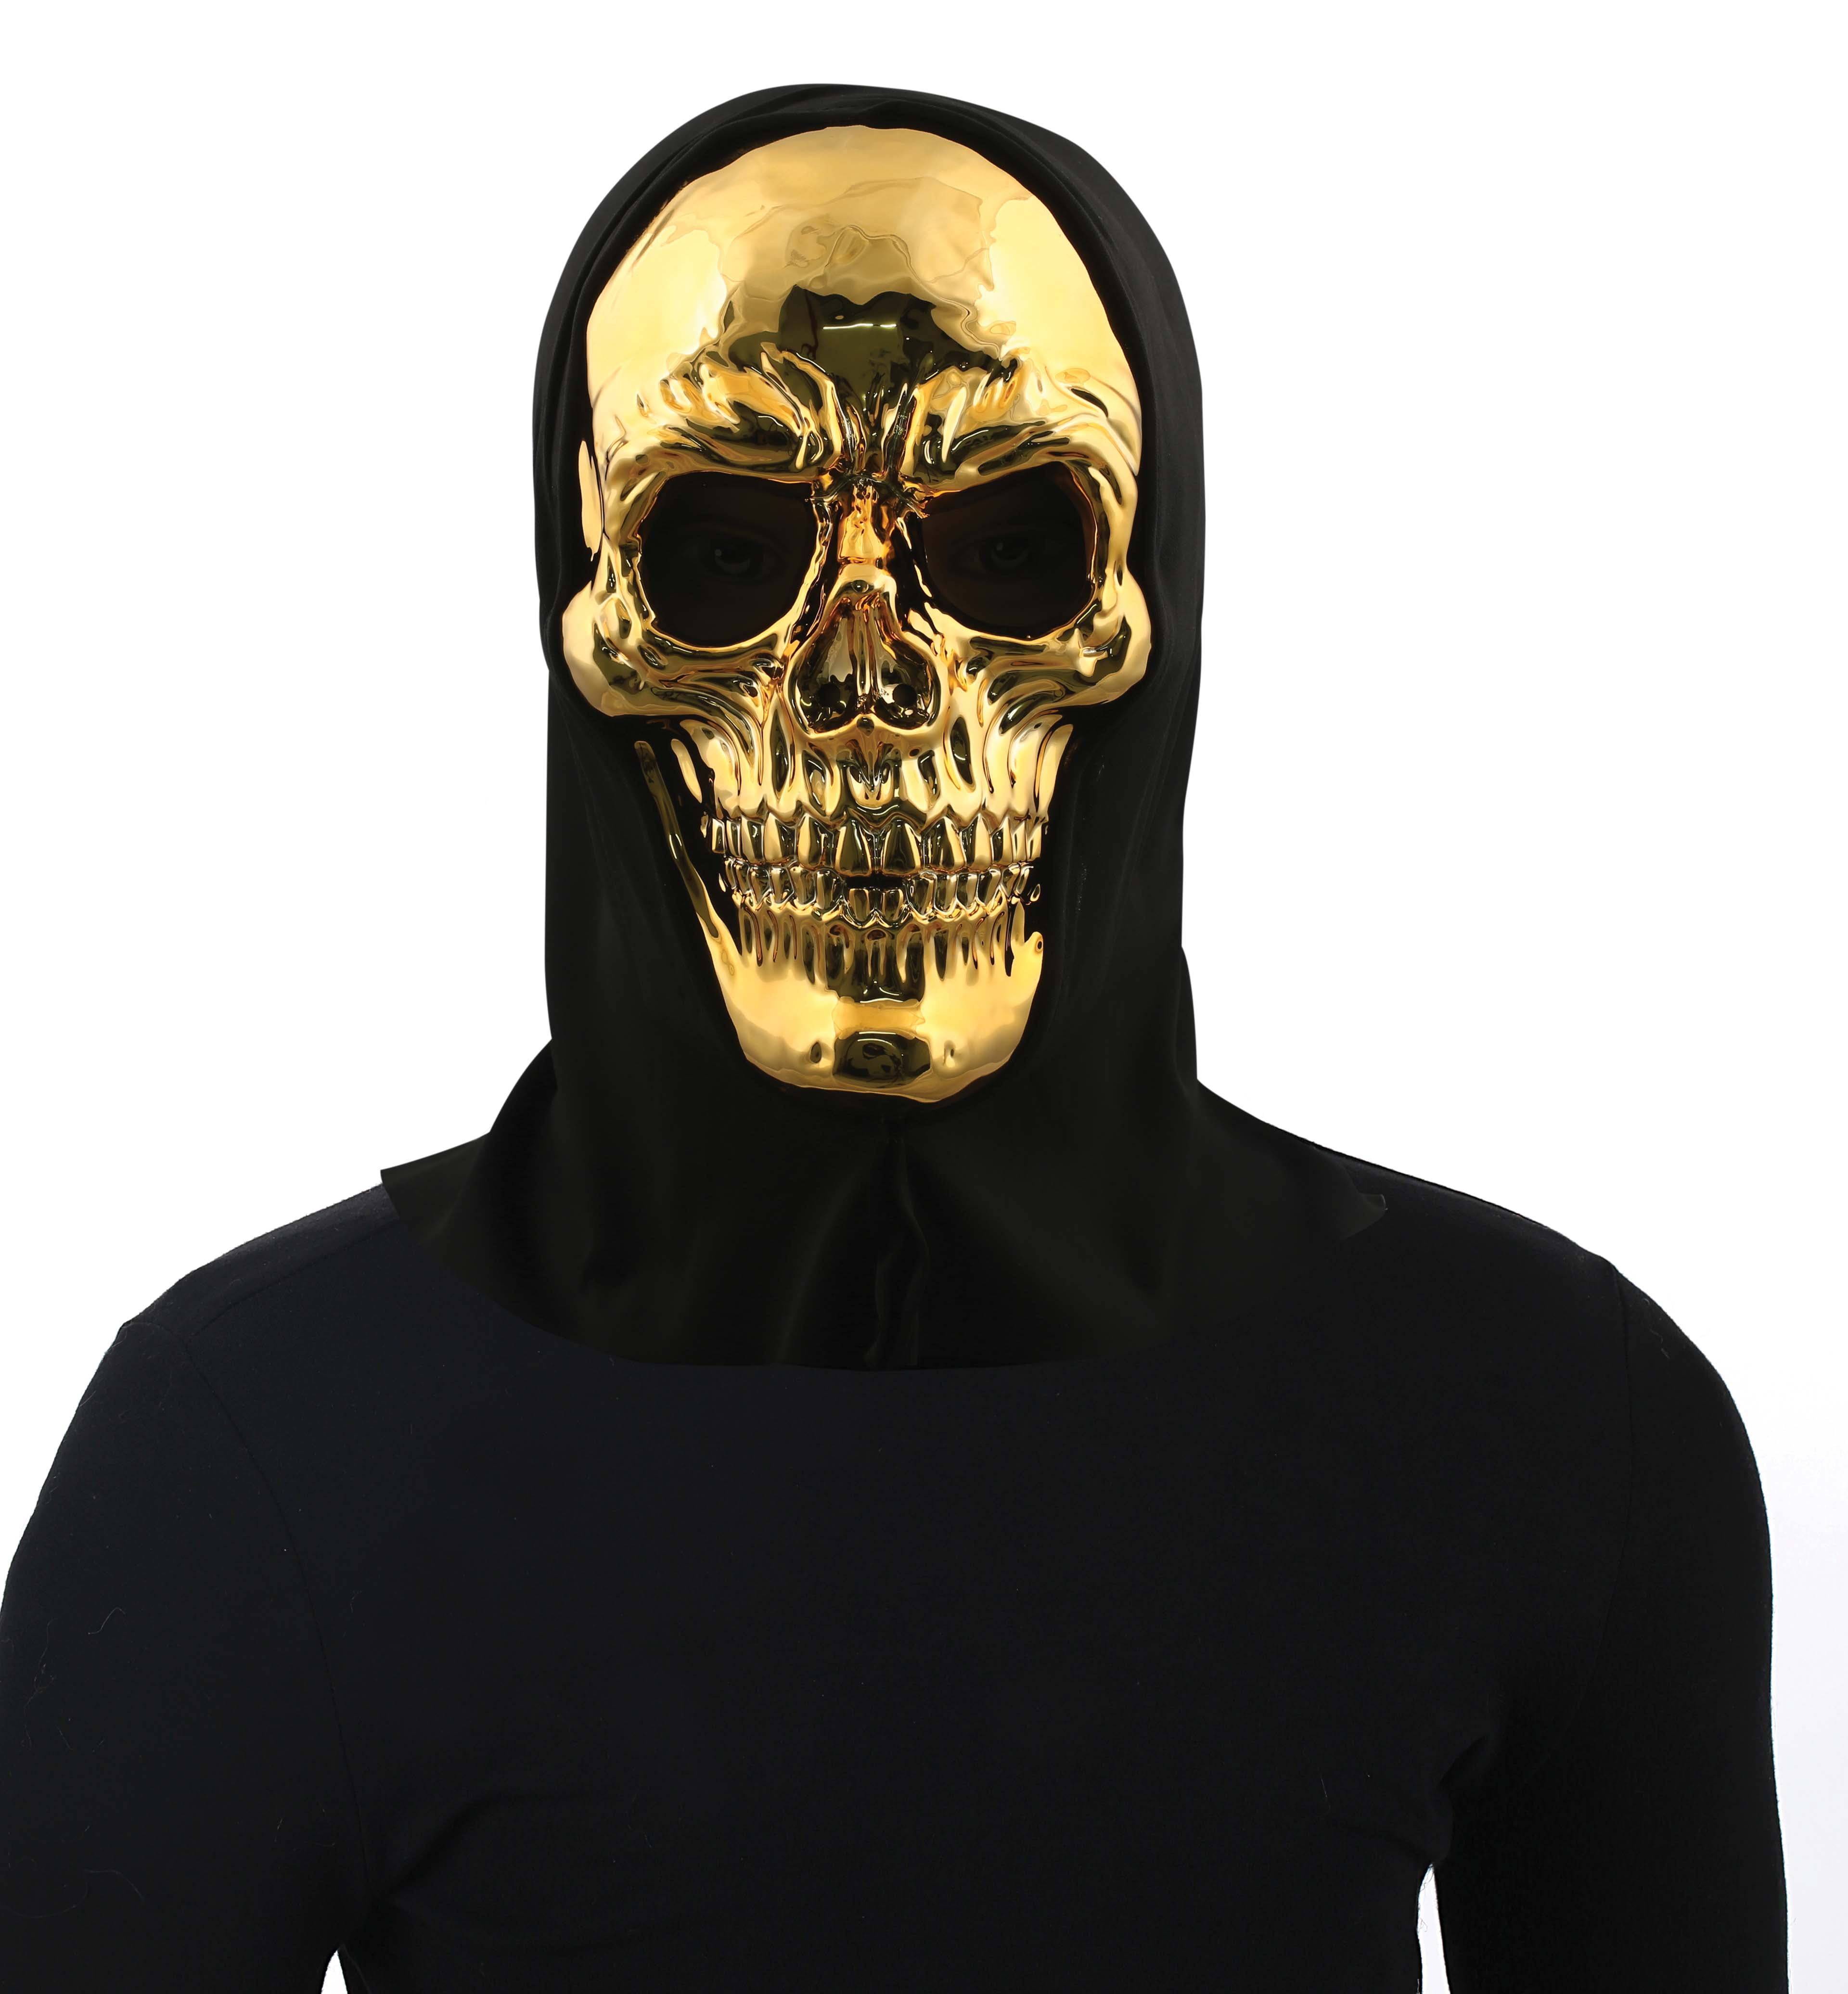 Gewaad Slim Raad eens Way To Celebrate Metallic Gold Skull Adult Halloween Mask. - Walmart.com